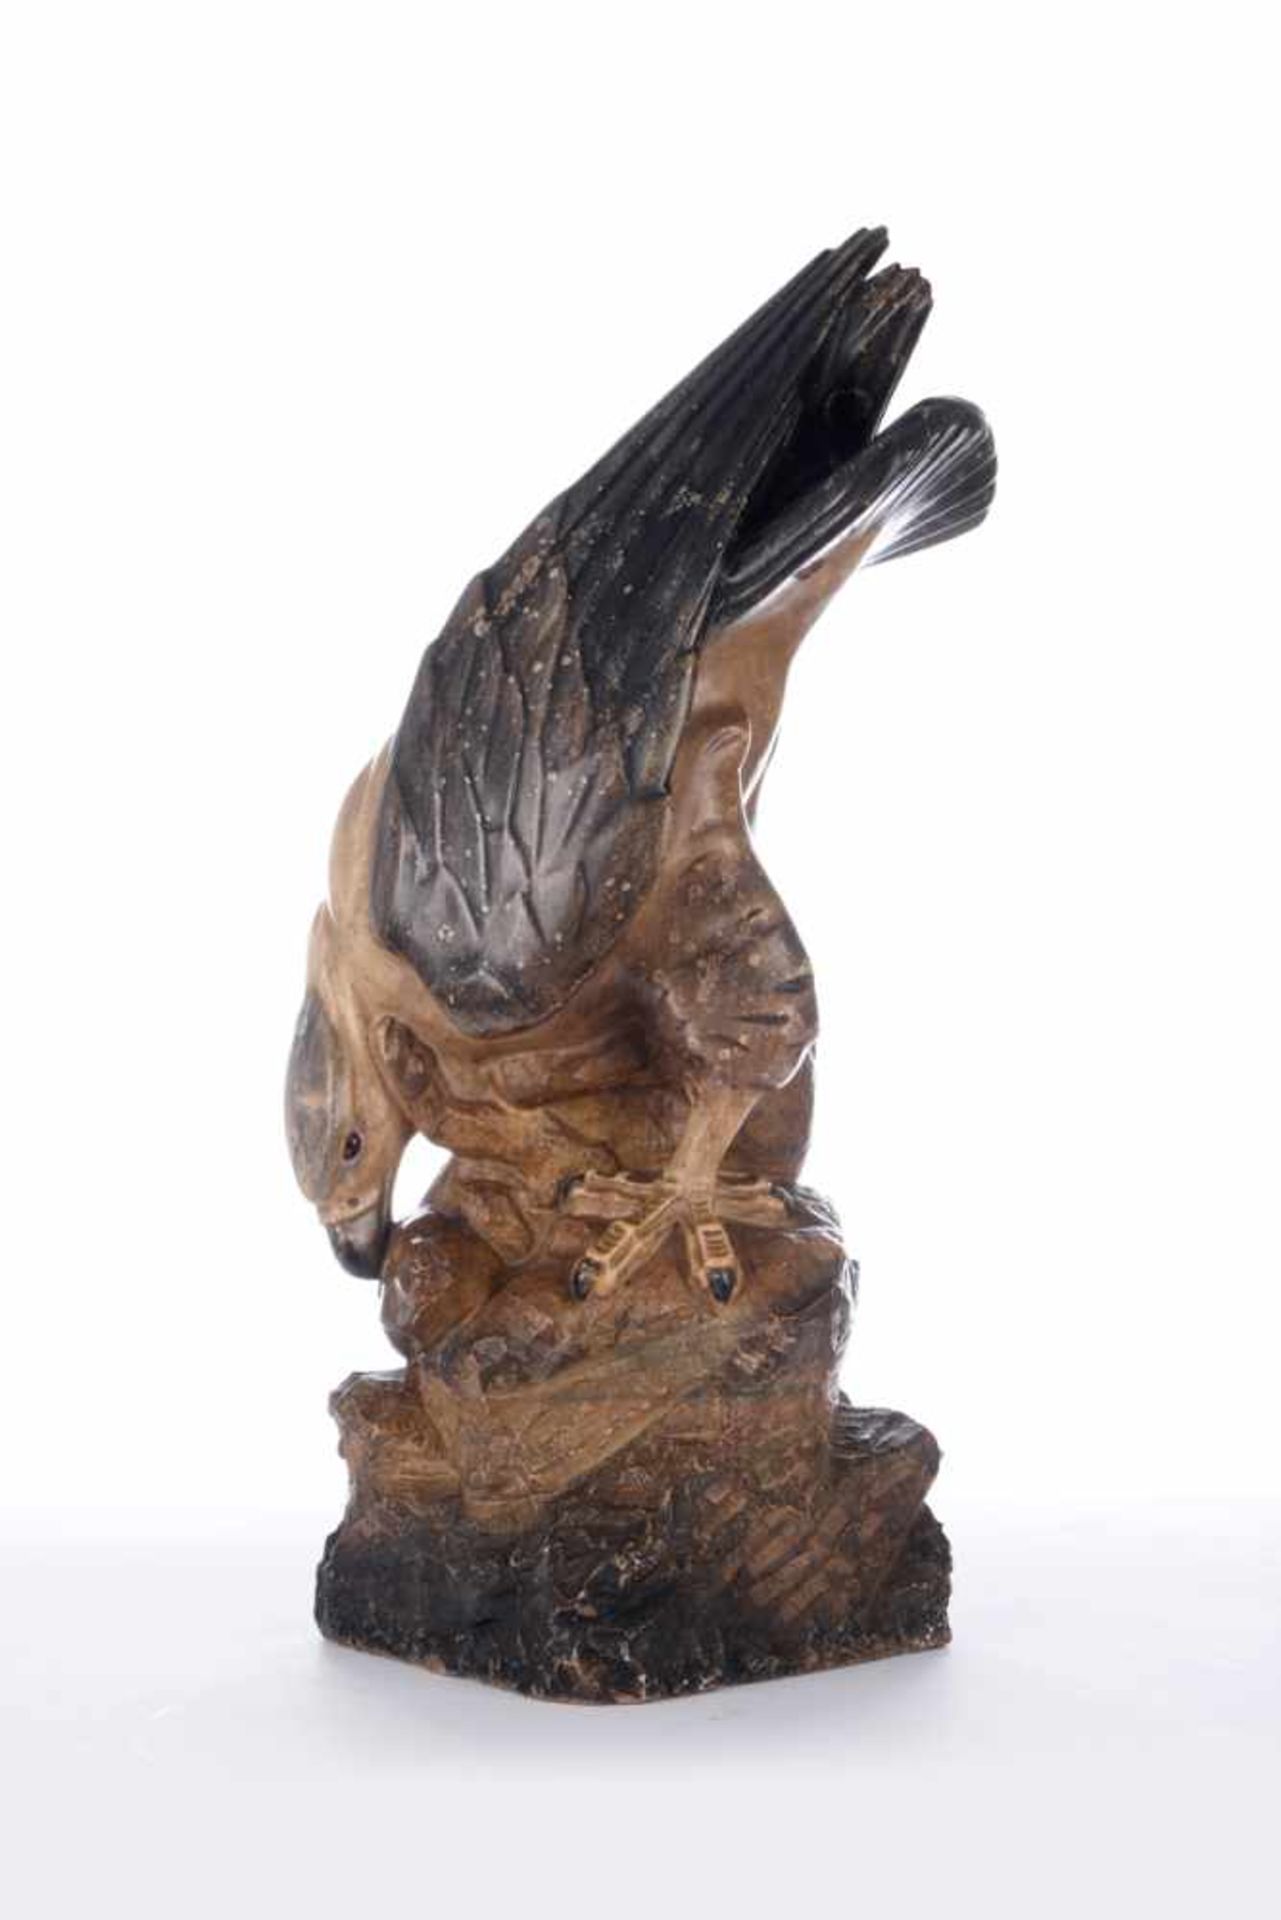 Adler reißt einen Hasen. Naturstein, marmoriert gefasst. Rückseitig signiert Kirchnersowie